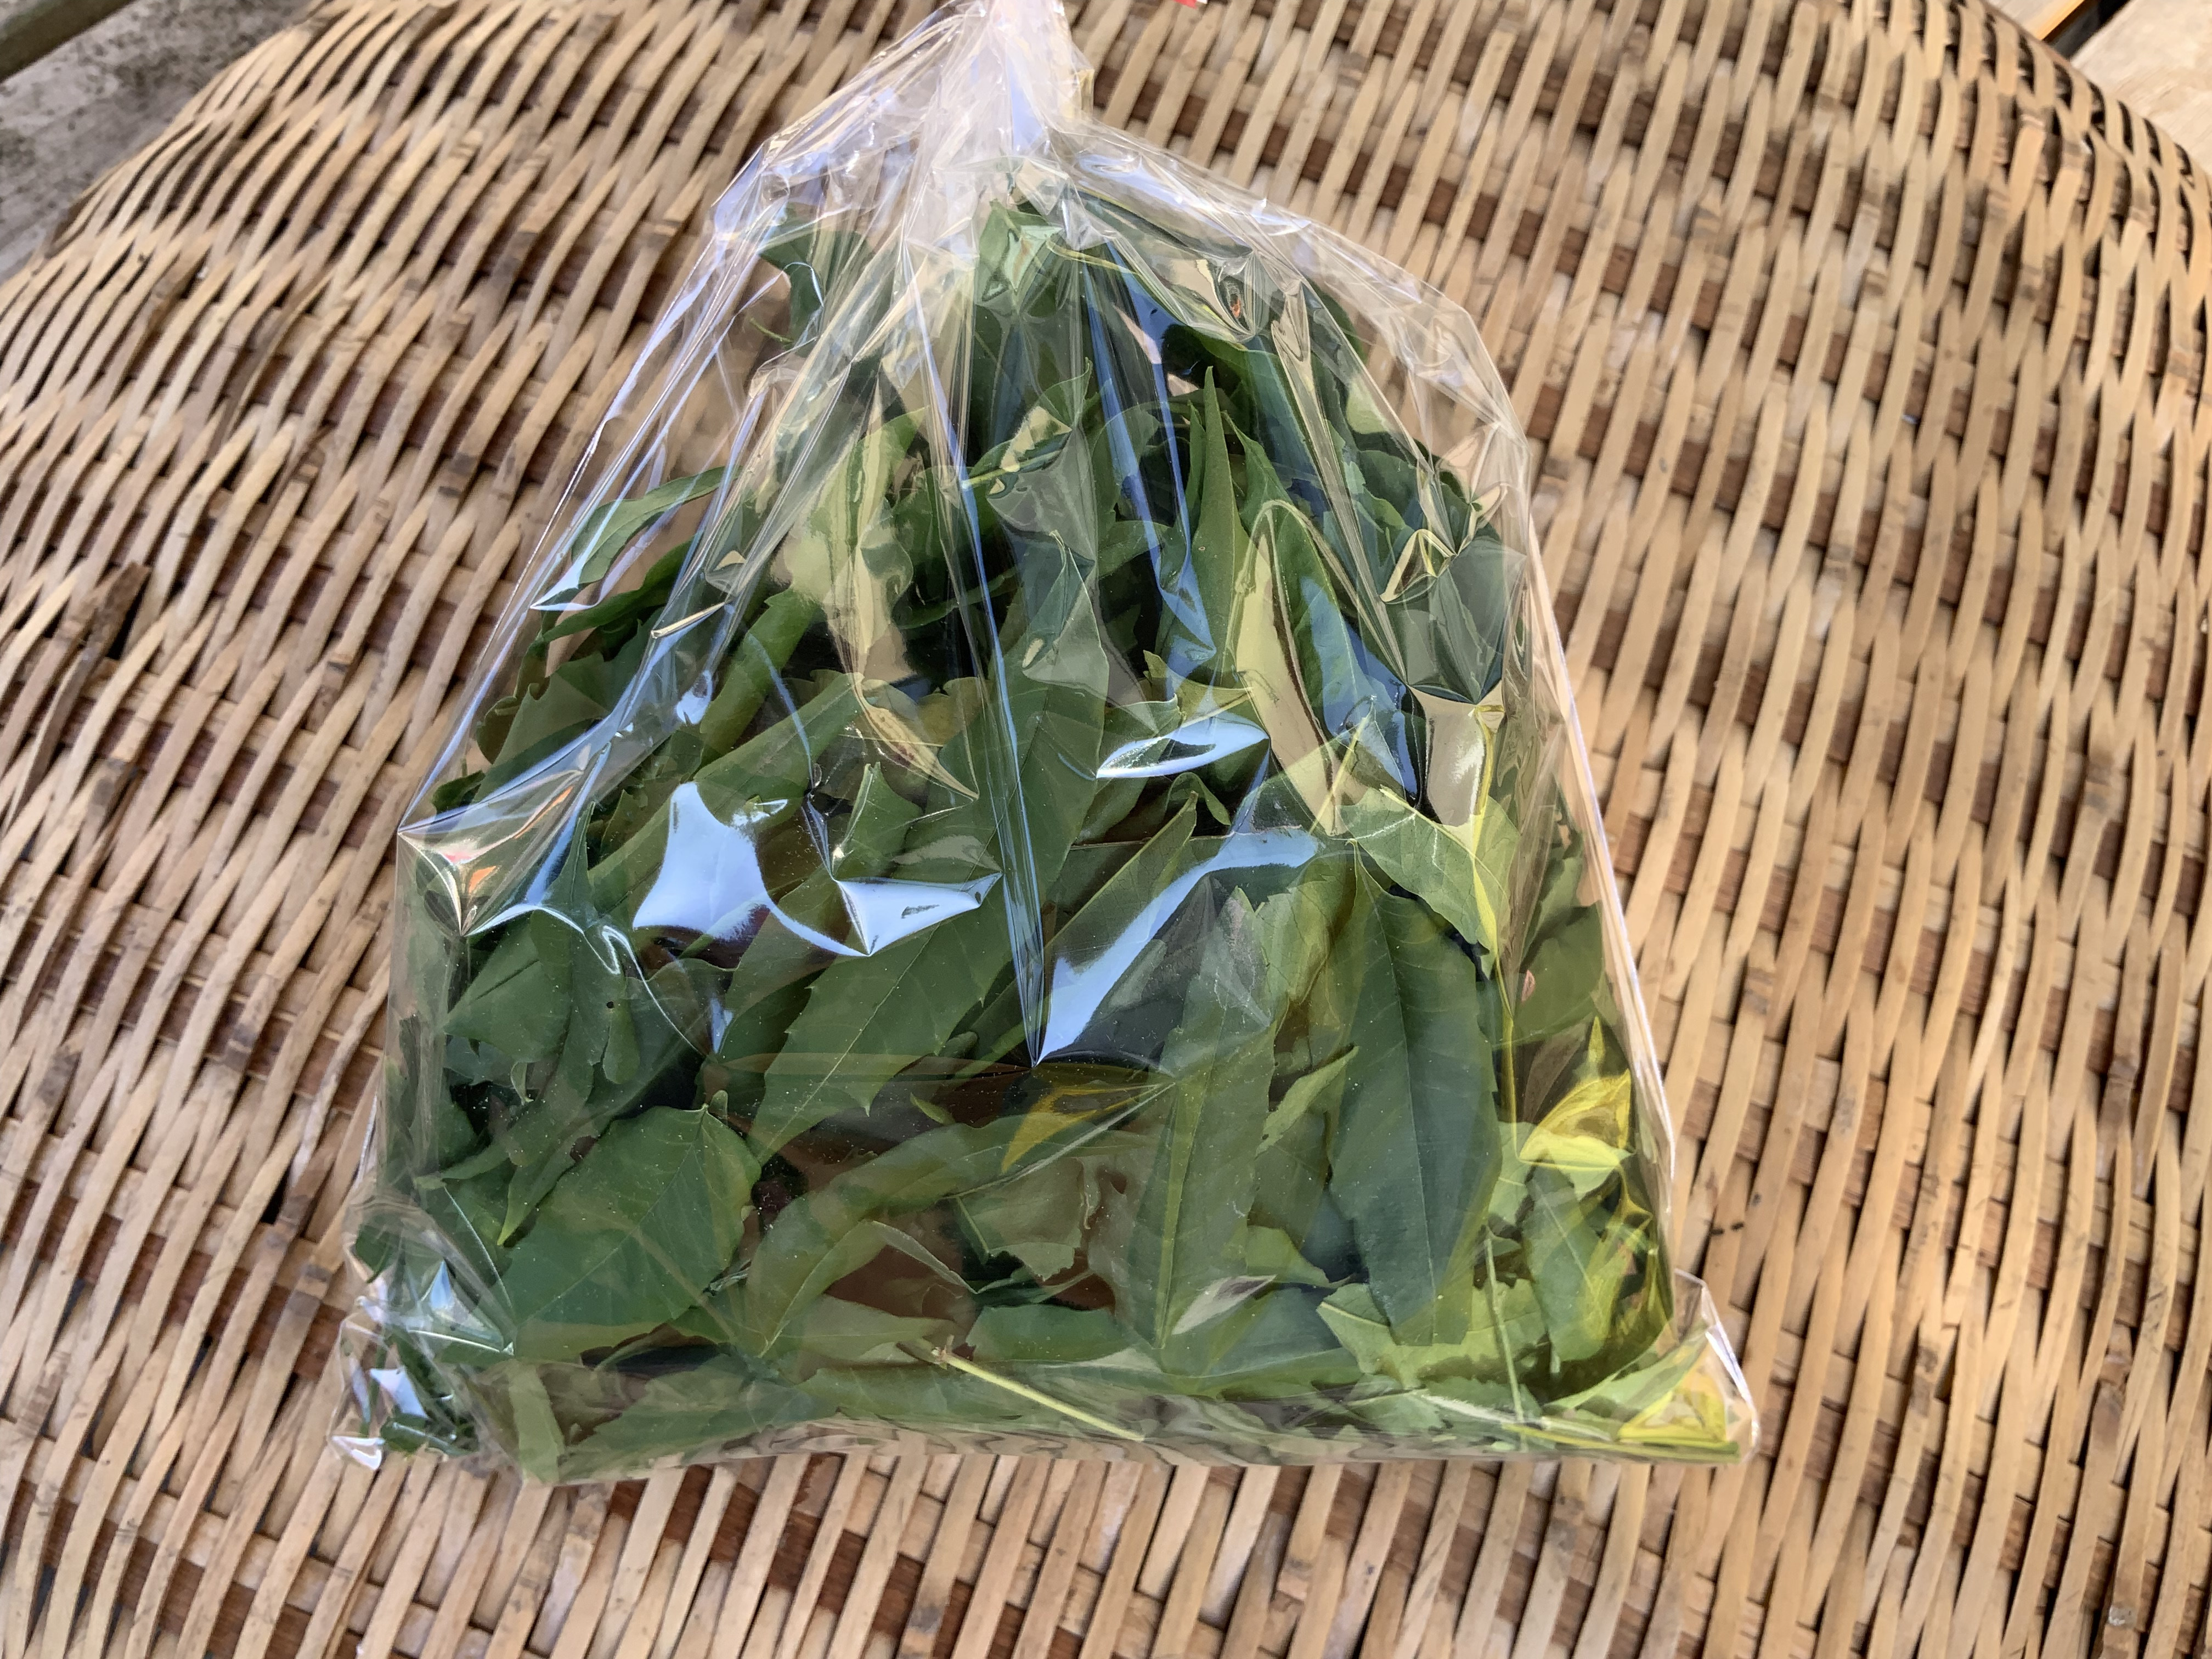 ニームの葉っぱを乾燥しました 熊本地震からの復興 ハーブ栽培 Bloguru